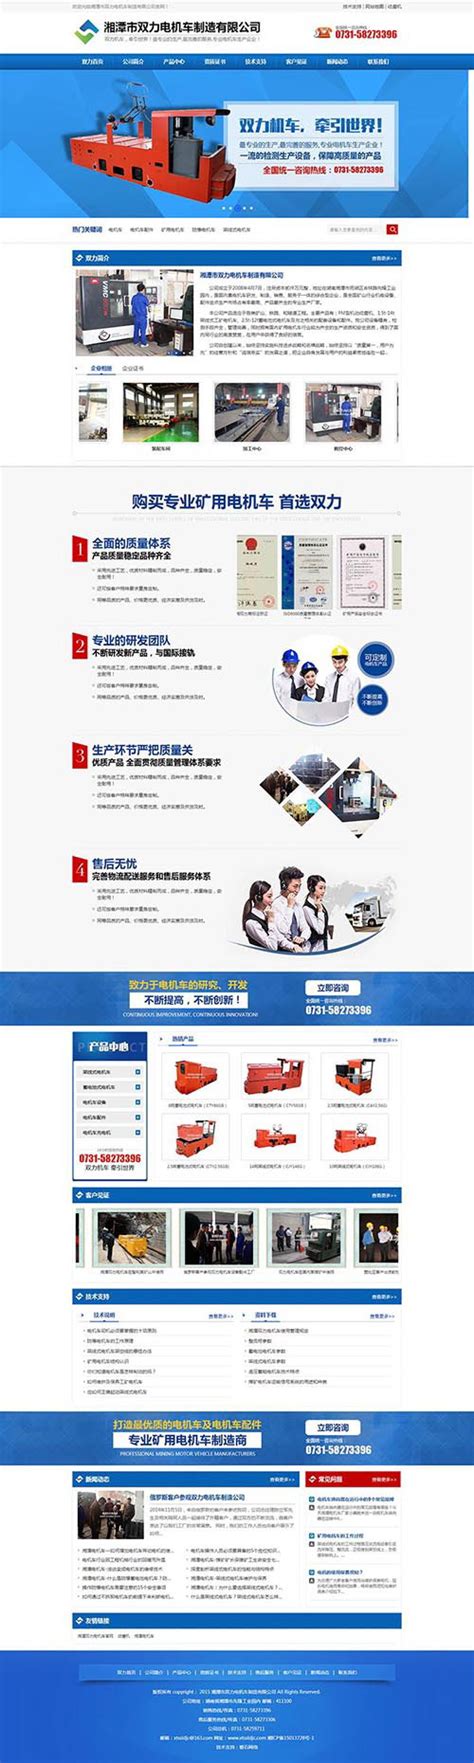 湘潭市双力电机车制造有限公司 - 湘潭磐石网络科技有限公司